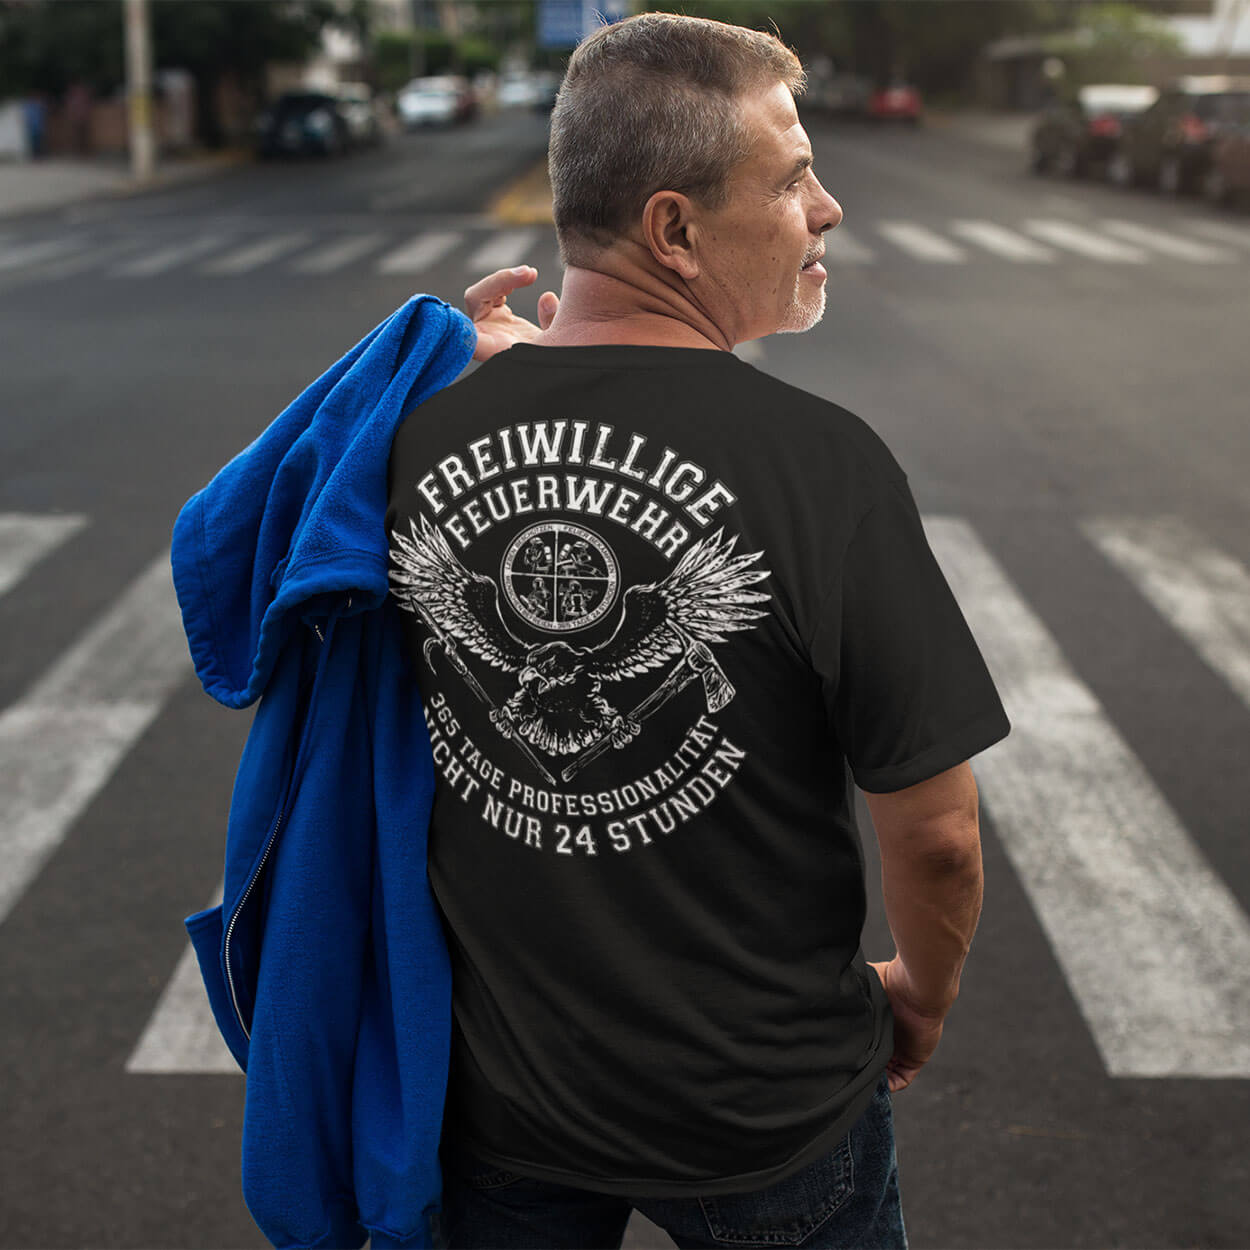 365 Tage Professionalität - Feuerwehr Herren T-Shirt